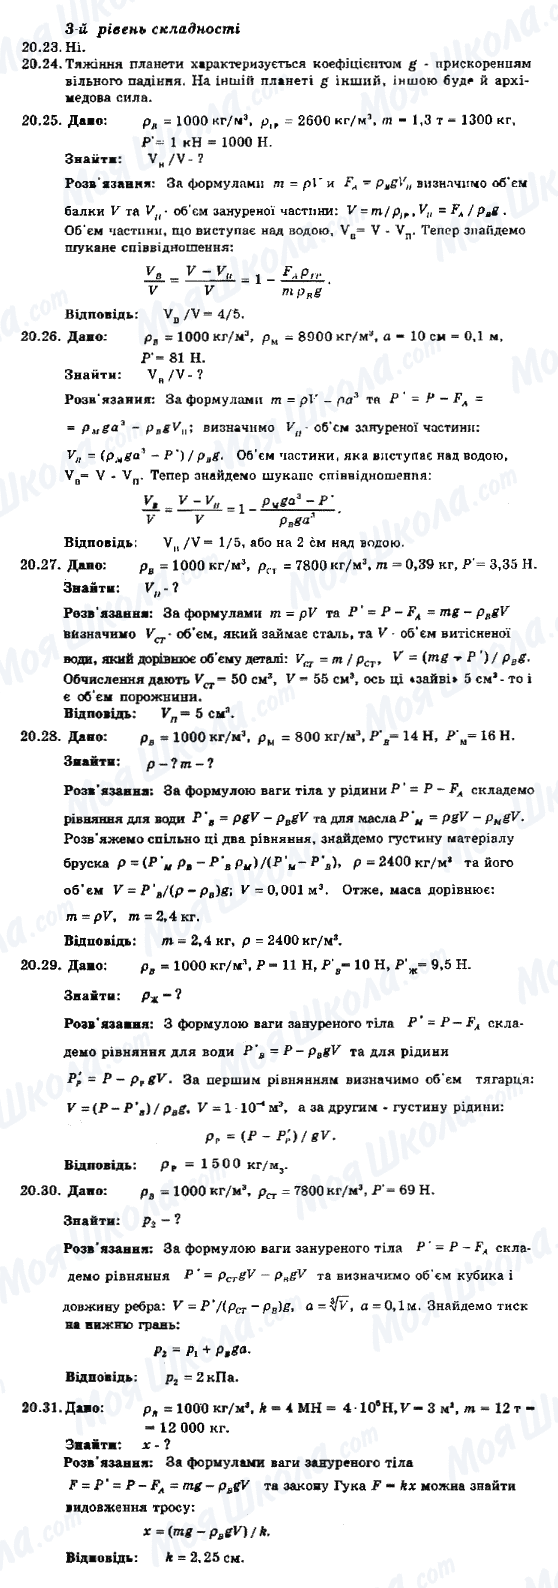 ГДЗ Фізика 8 клас сторінка 20.23-20.31